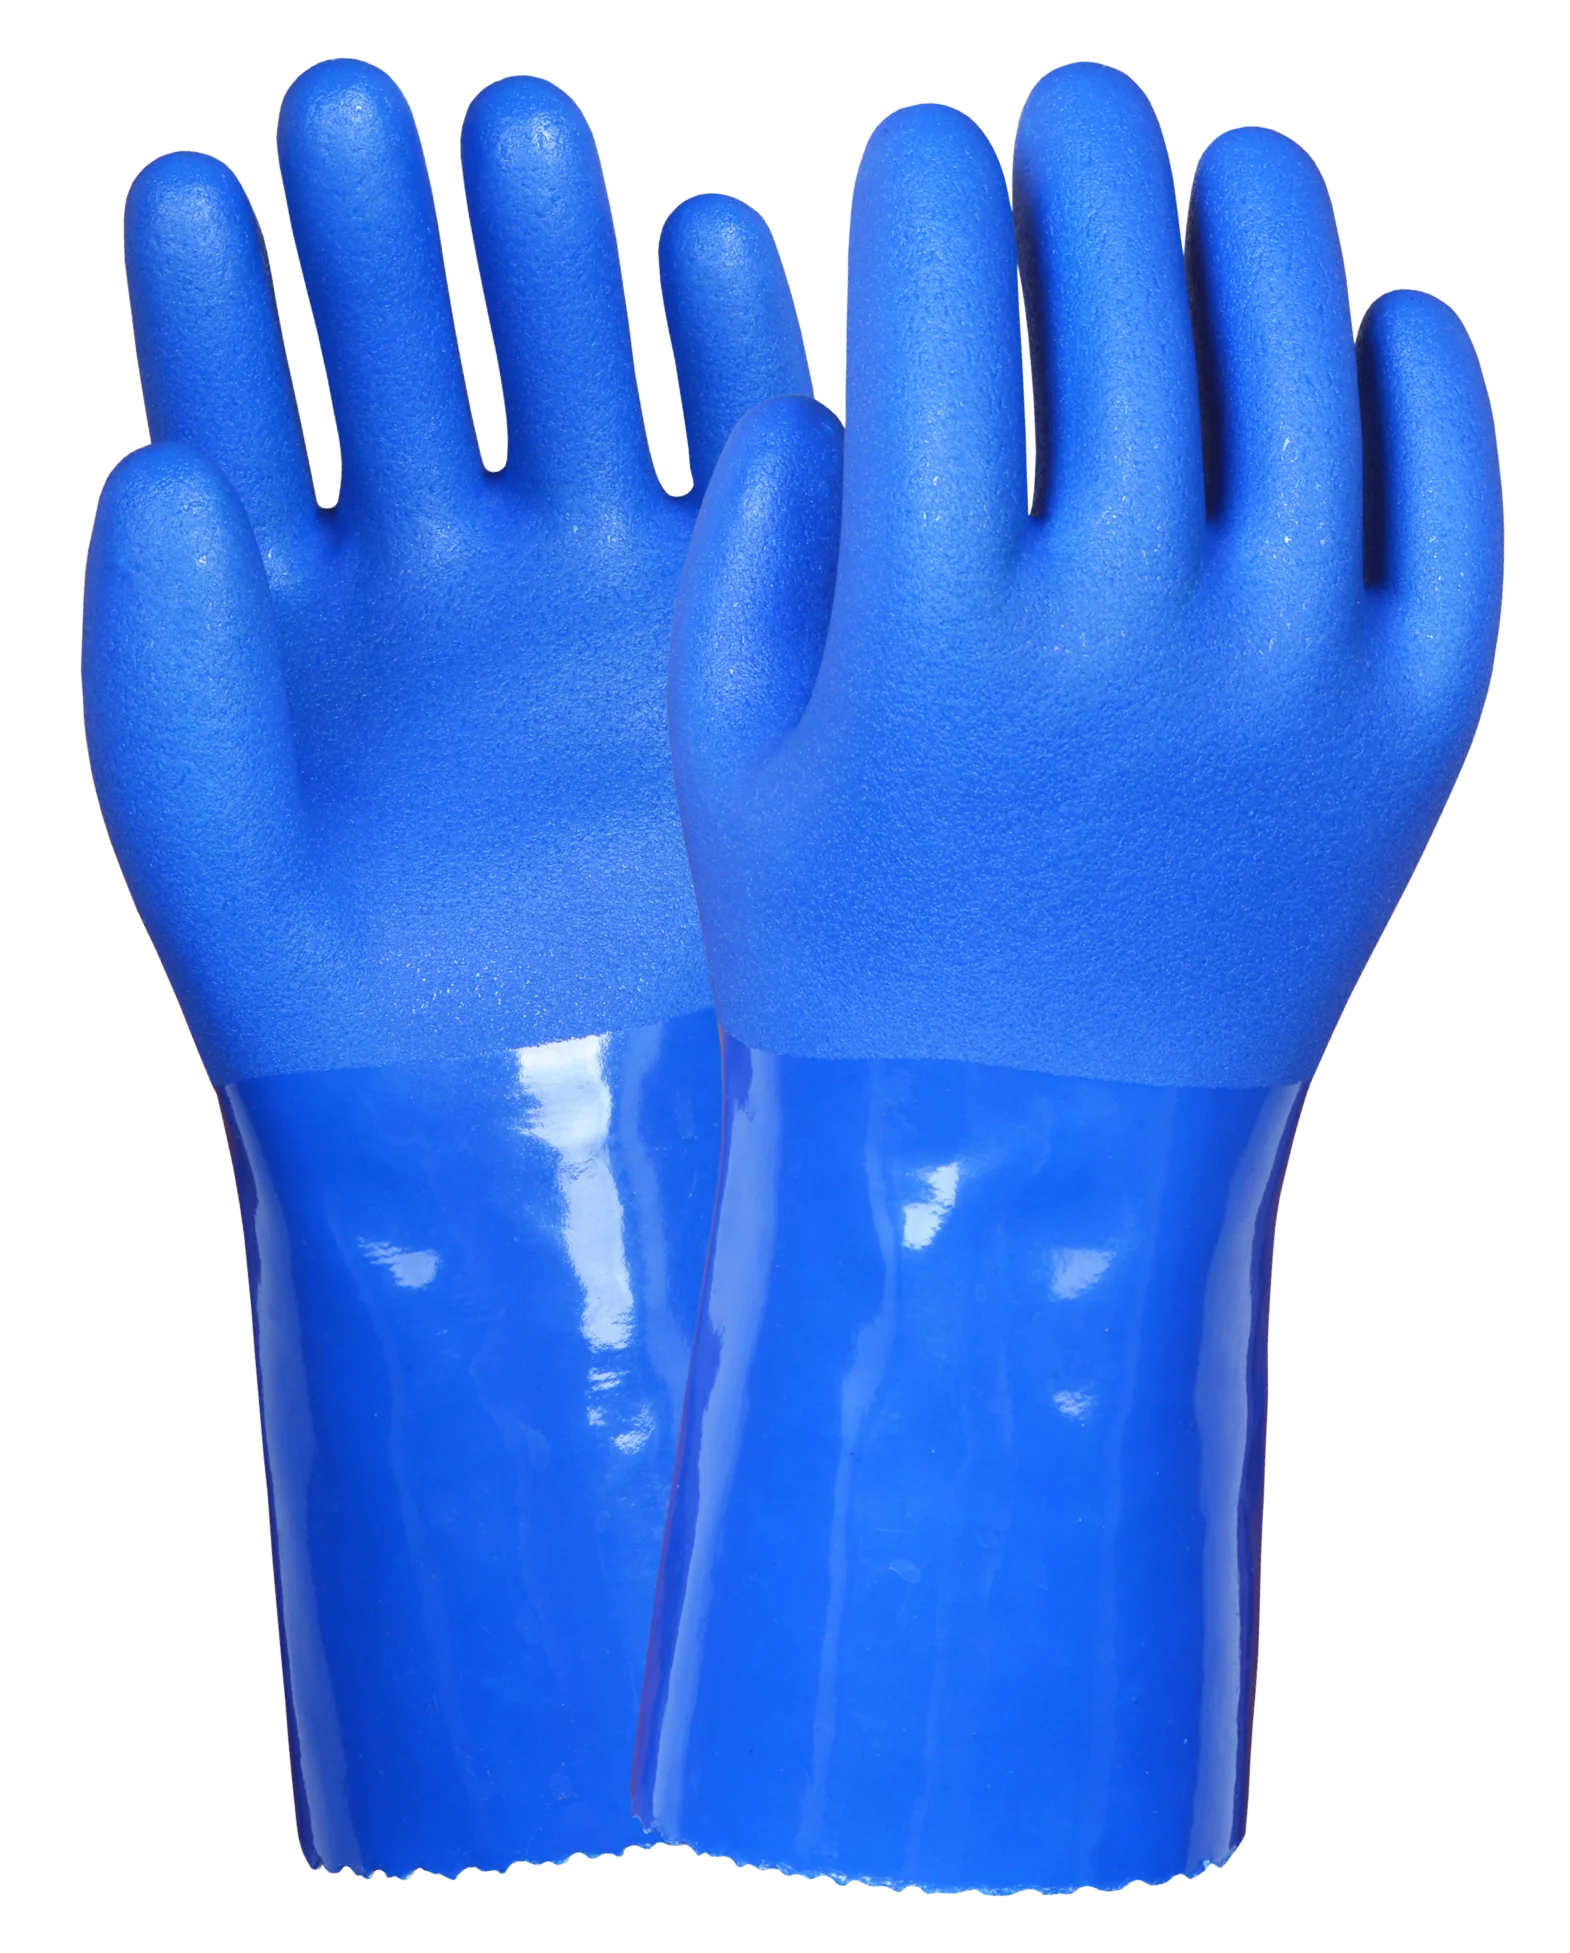 Gward Sandy long химически стойкие перчатки с длинным рукавом артикул: pvc014. Перчатки Size 10 хим ПВХ. Перчатки нитриловые химически стойкие. Перчатка ПВХ.